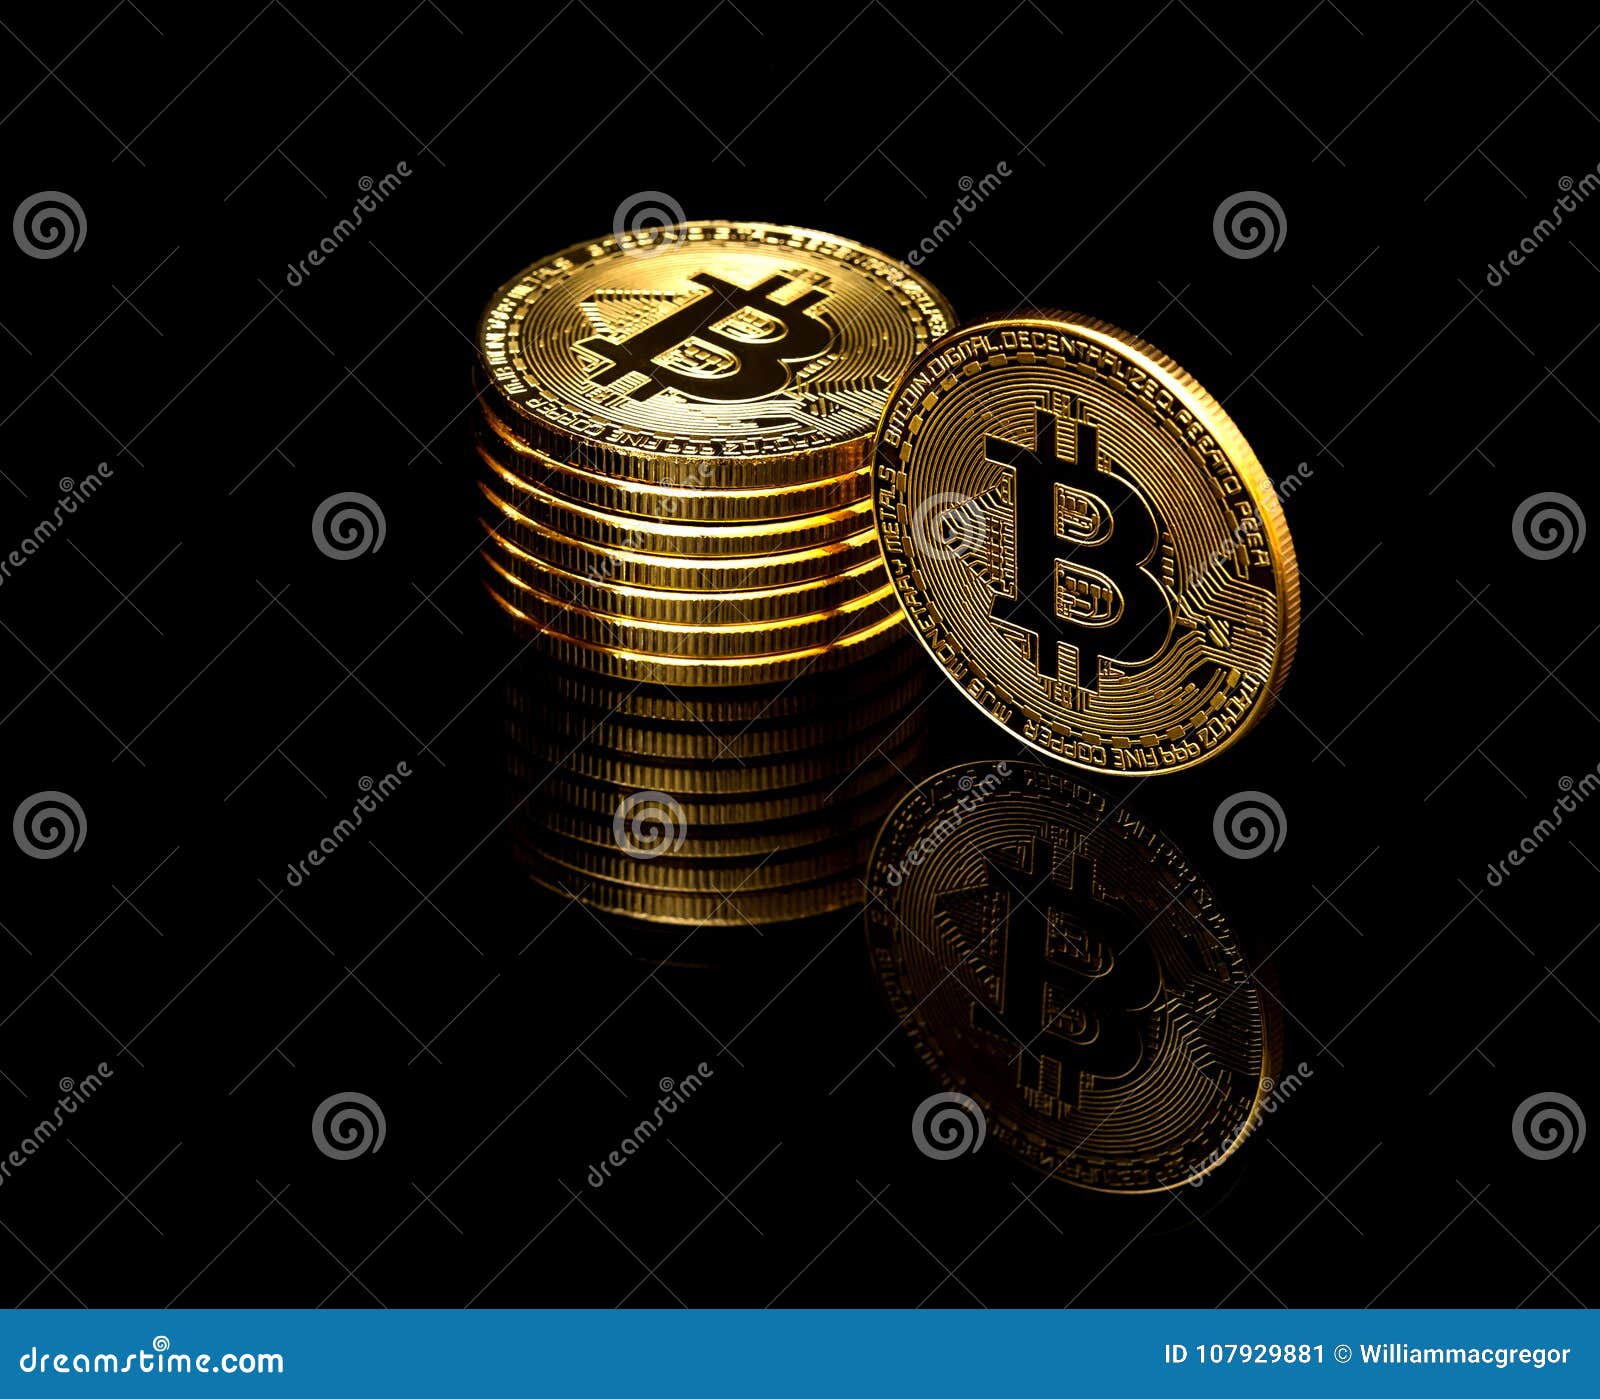 Symbol Bitcoin Black PNG Images & PSDs for Download | PixelSquid - SA